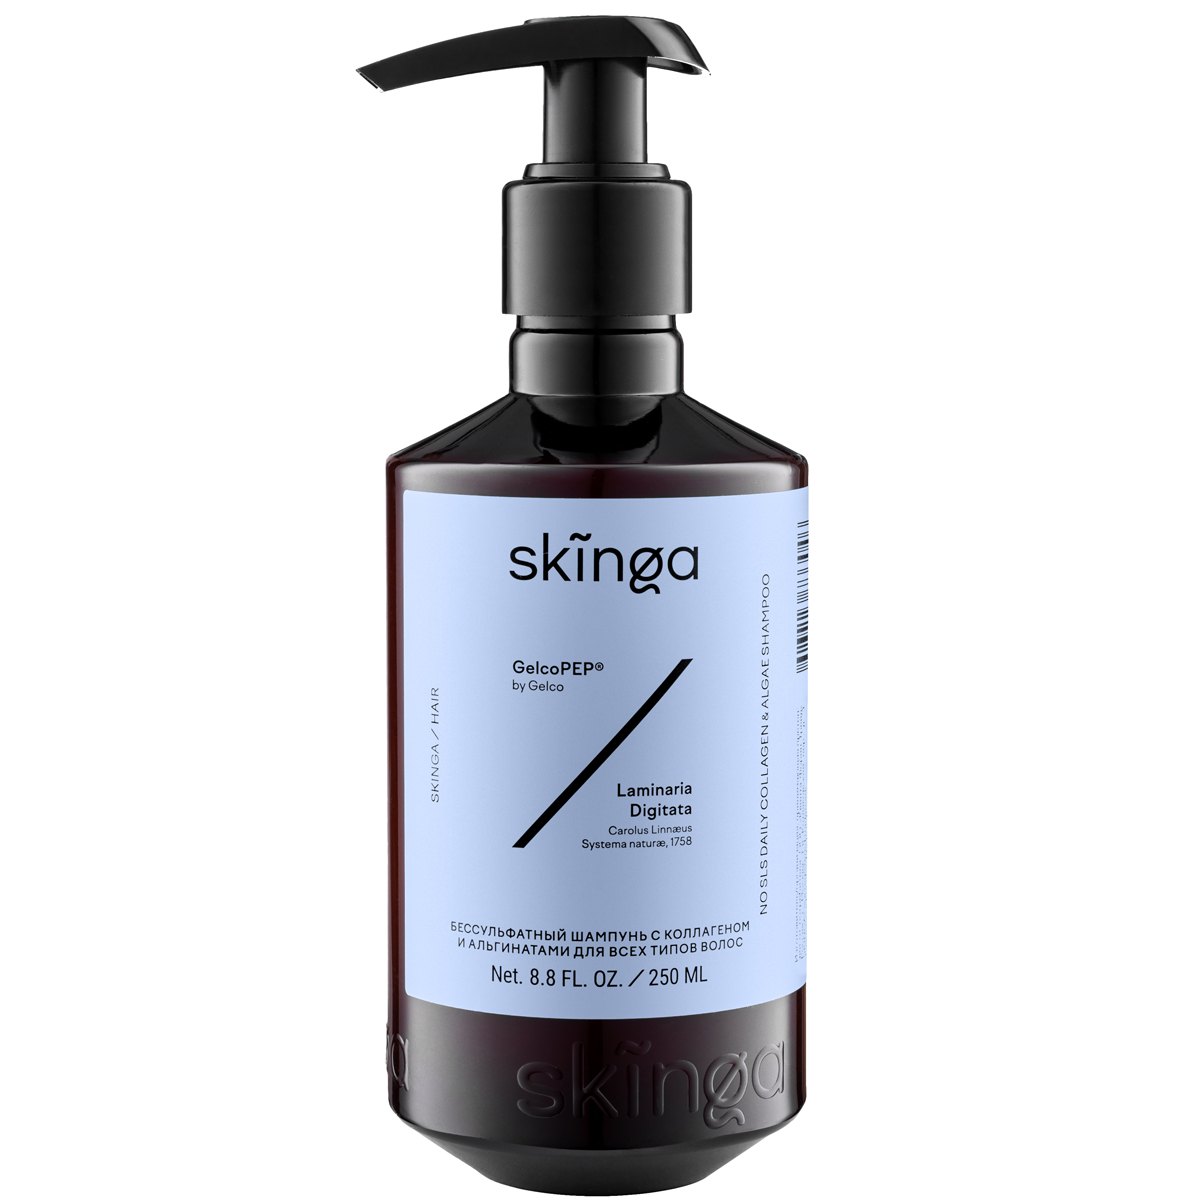 Skinga Бессульфатный шампунь с коллагеном и альгинатами для всех типов волос, 250 мл (Skinga, Hair) лифтинг крем для тела skinga с альгинатами 200 мл